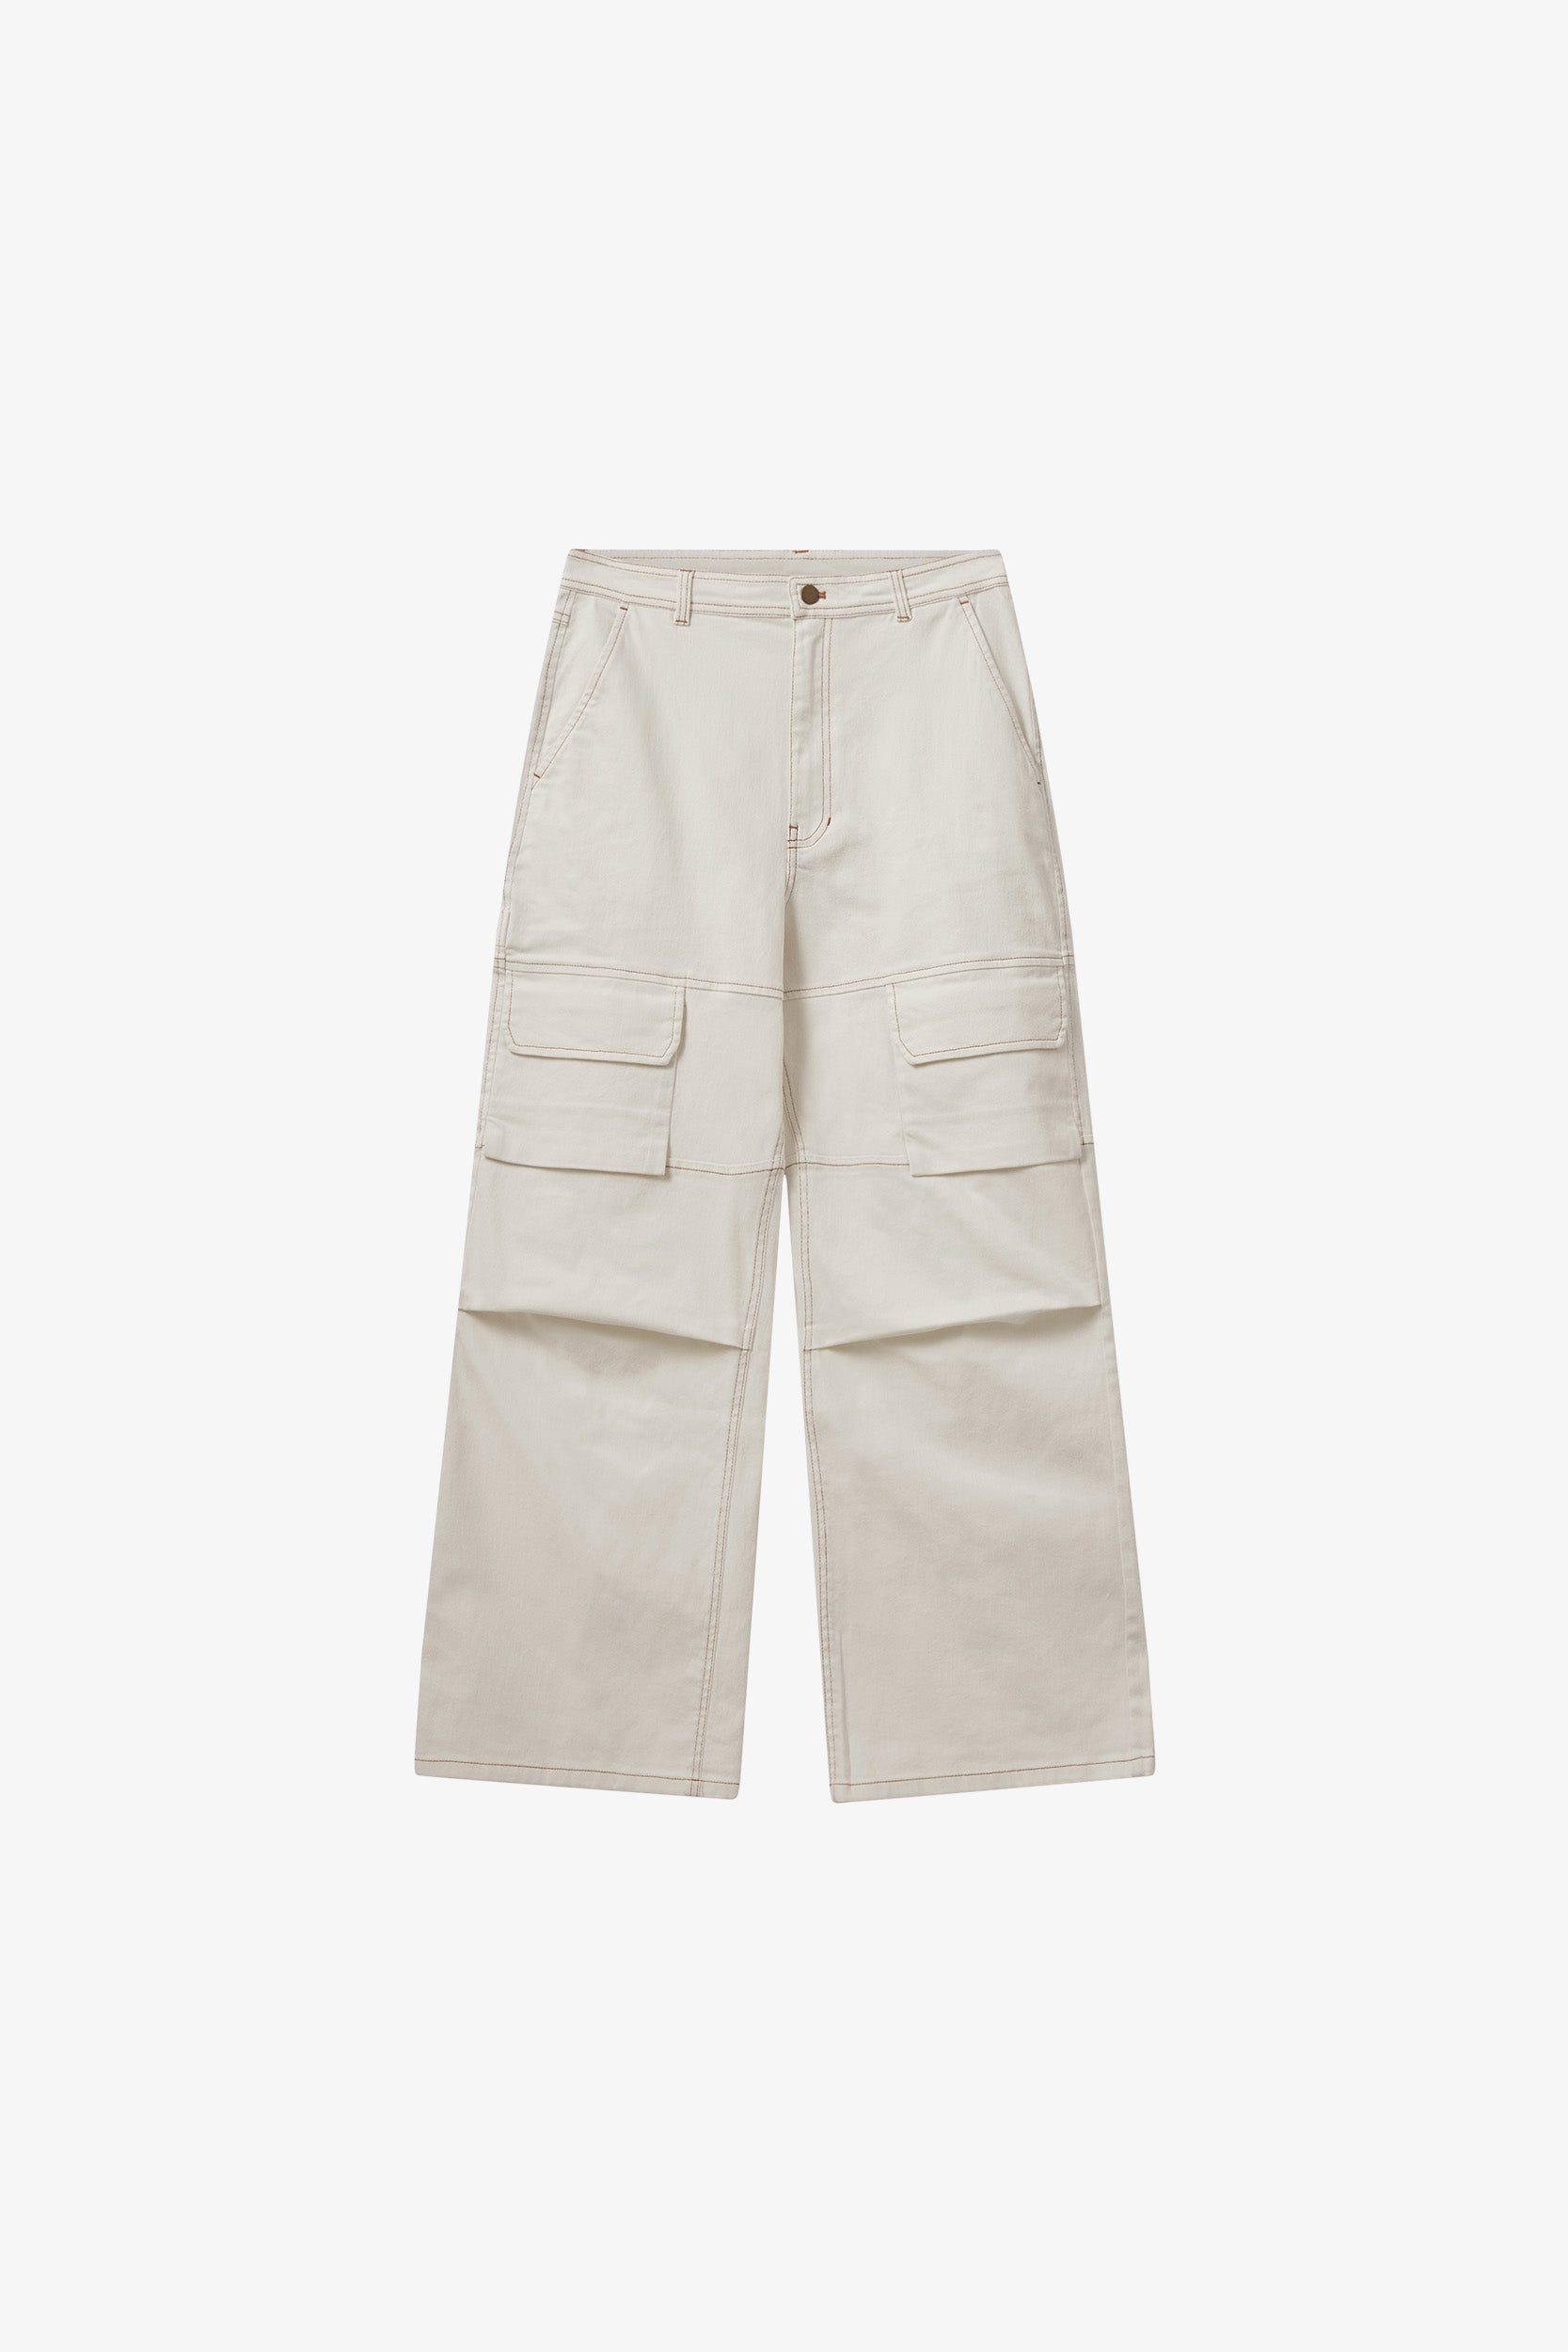 H2OFagerholt Classic Box Jeans Pants 1003 Cream White